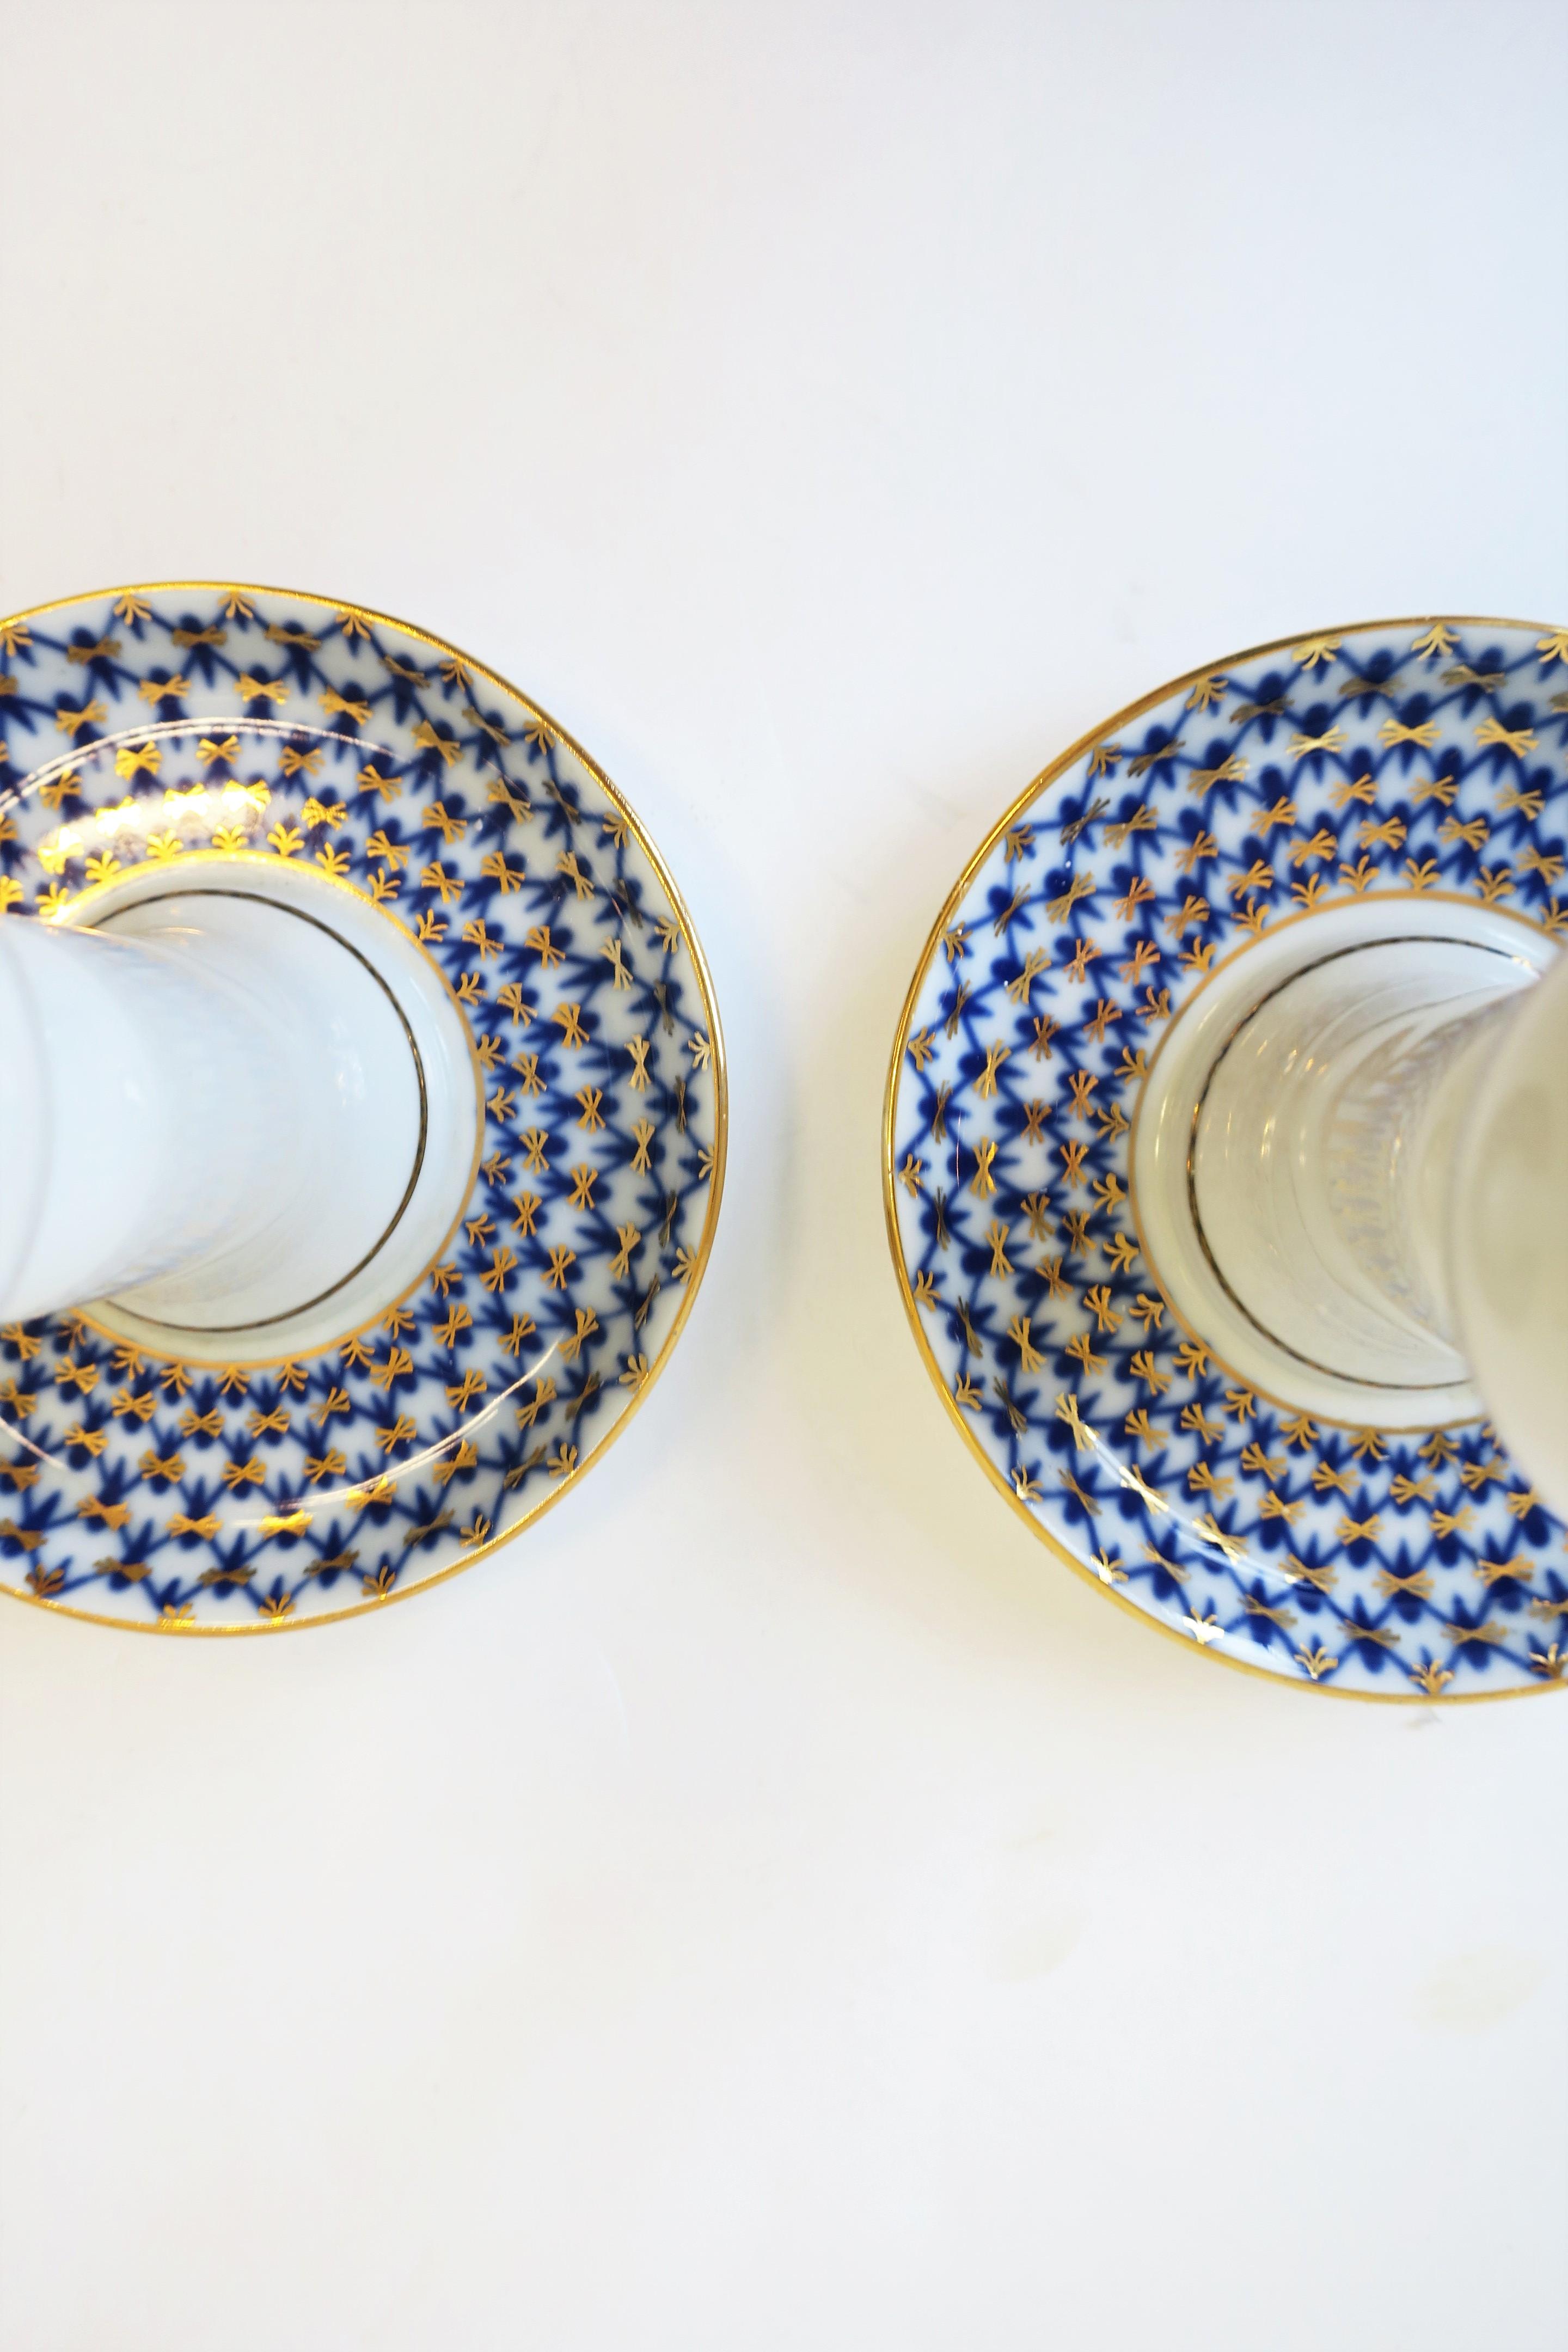 Russian Lomonosov Blue Gold White Porcelain Candlesticks Holders, Pair For Sale 8